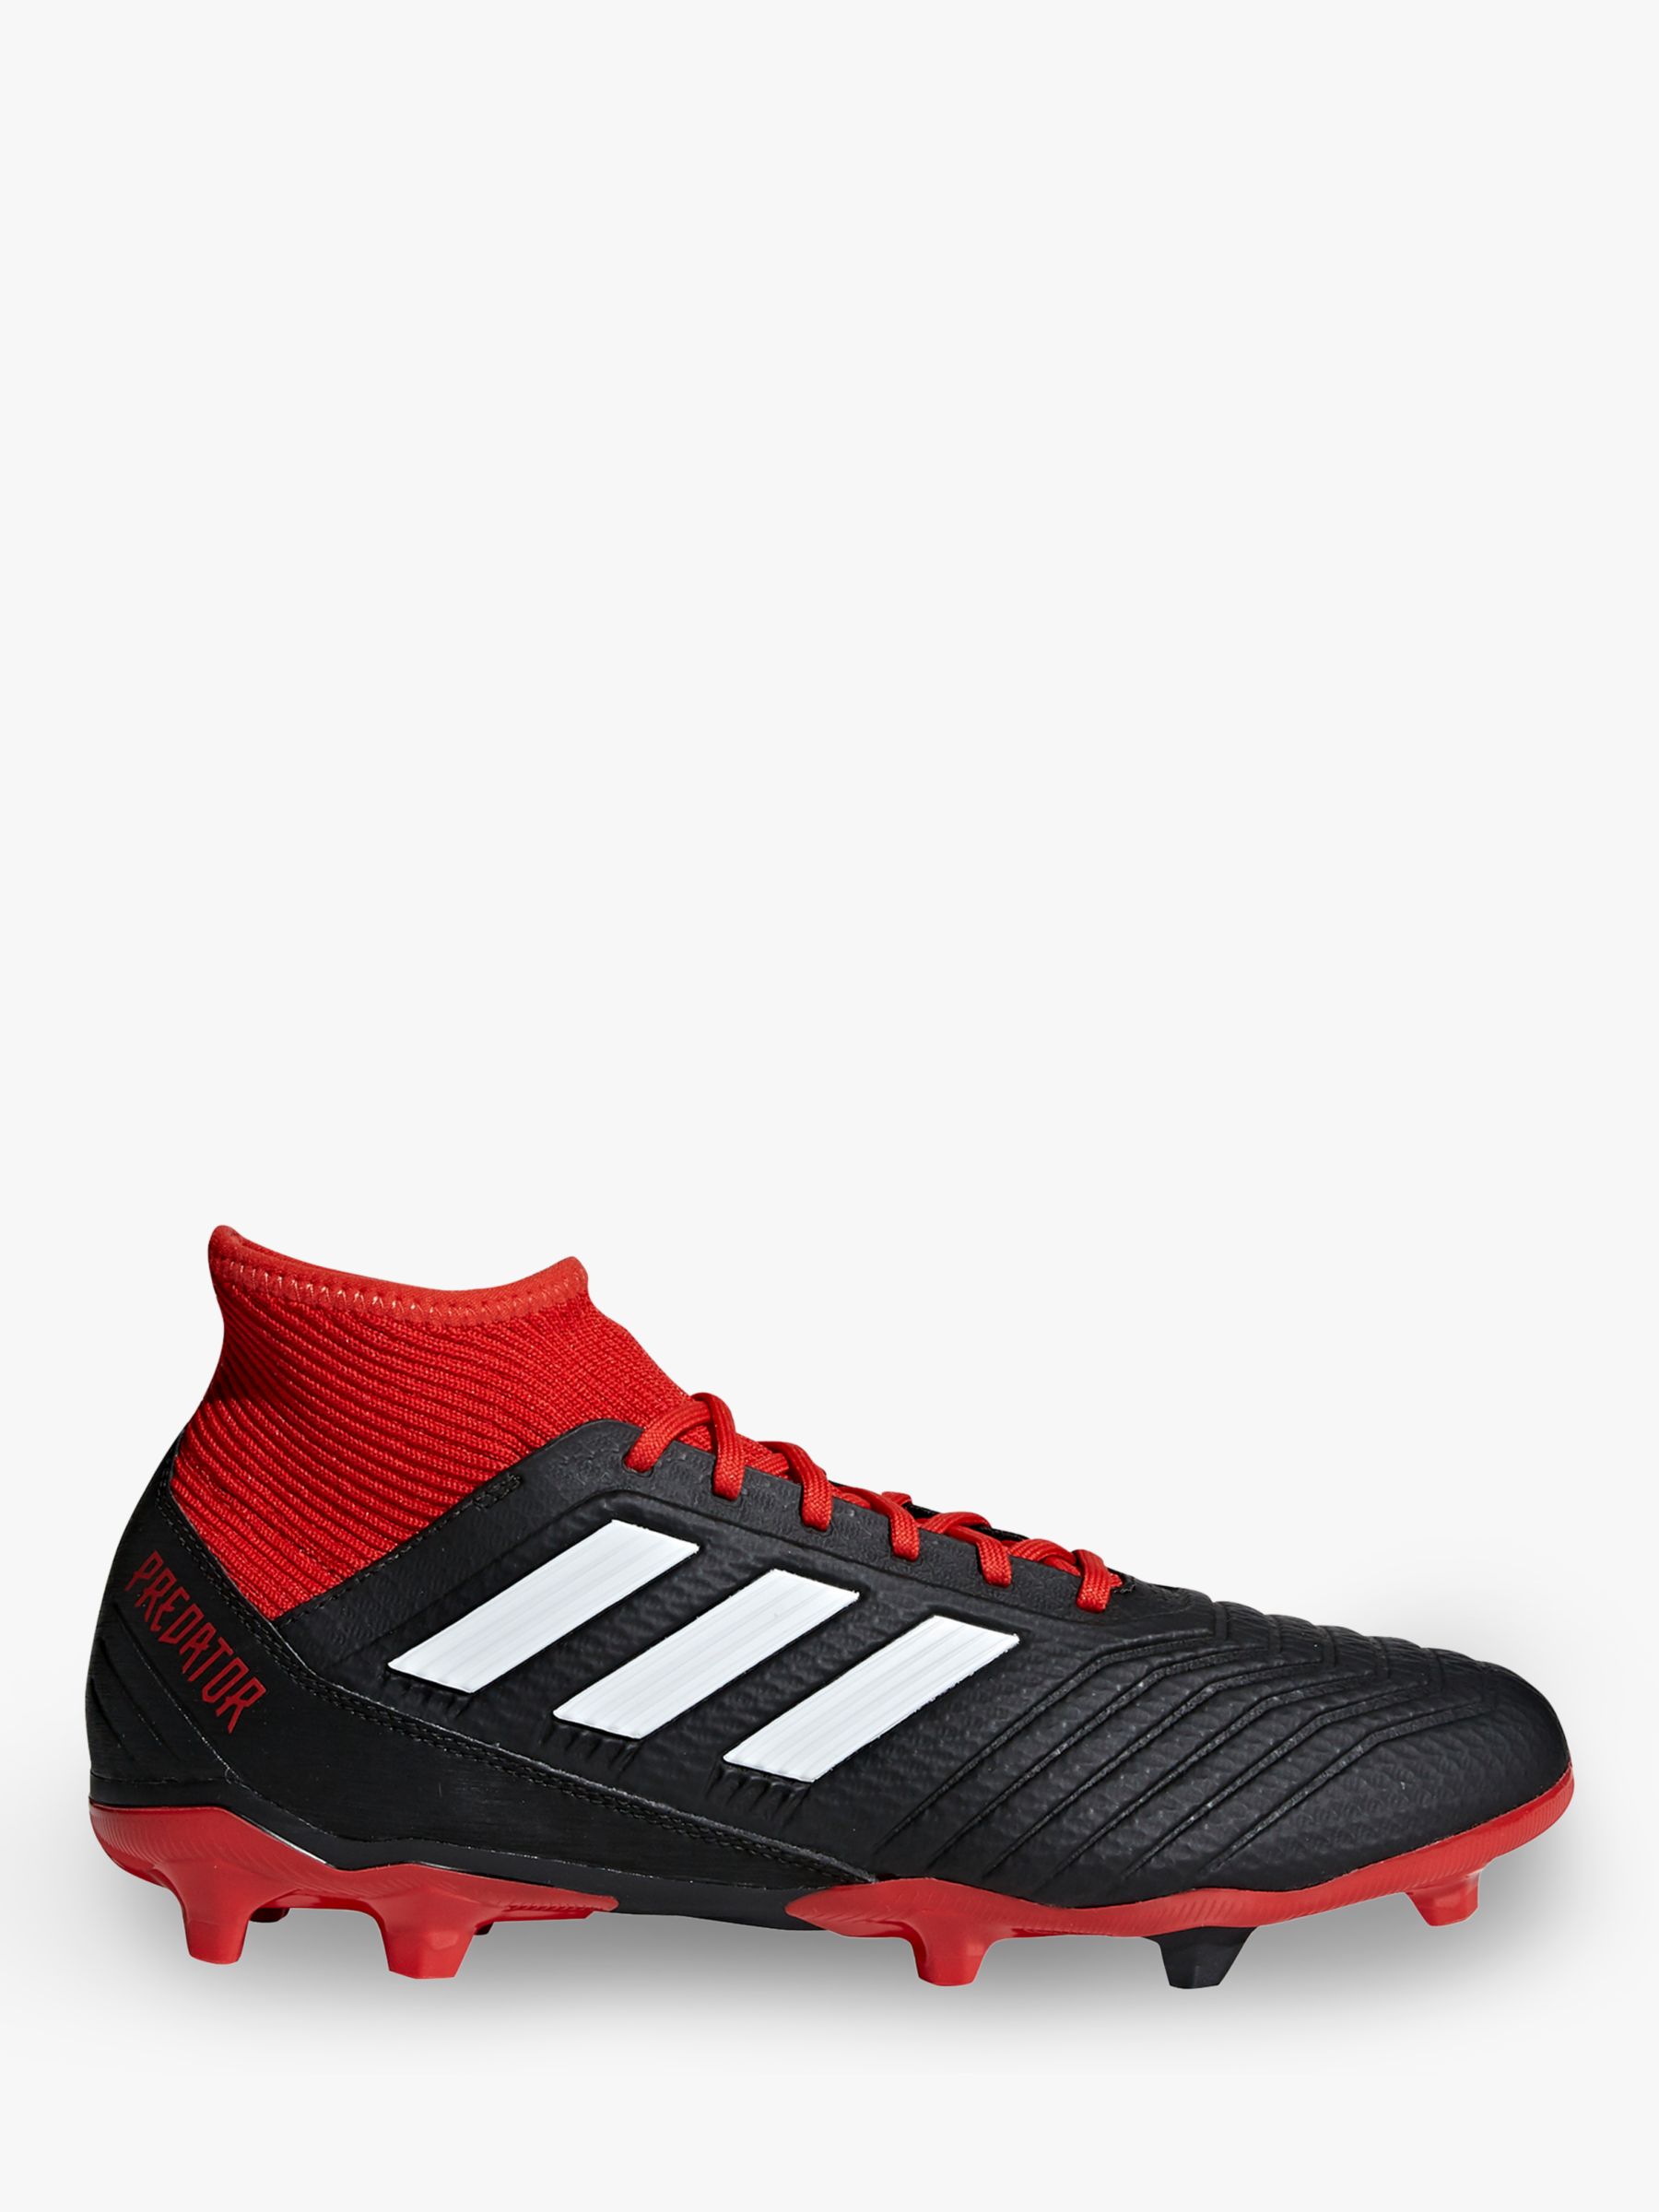 adidas football boots 18.3